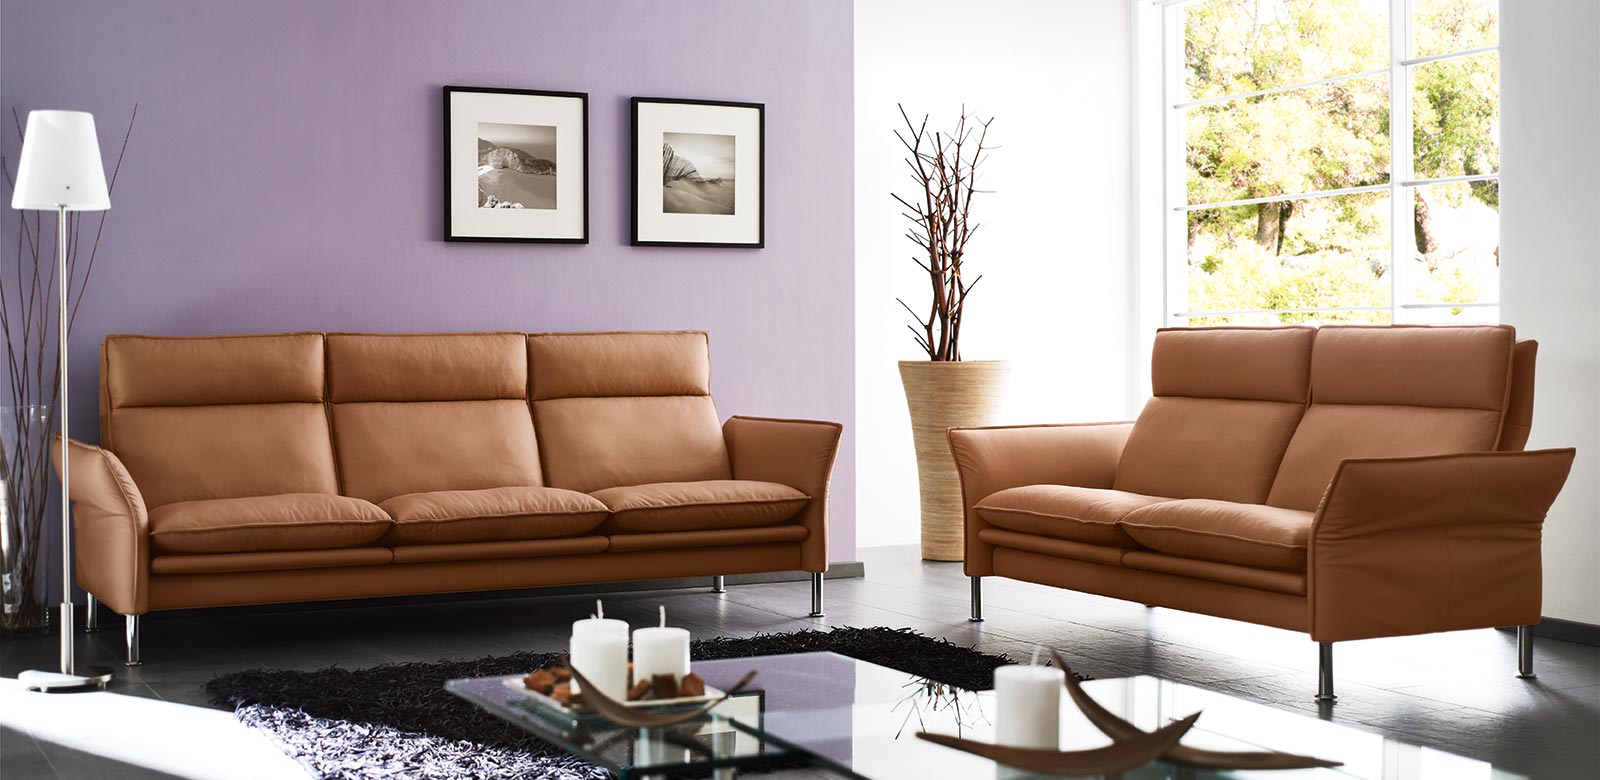 Porto 3-Sitzer und 2-Sitzer in hellbraunem Leder im modernen Wohnzimmer mit violetter Wand.